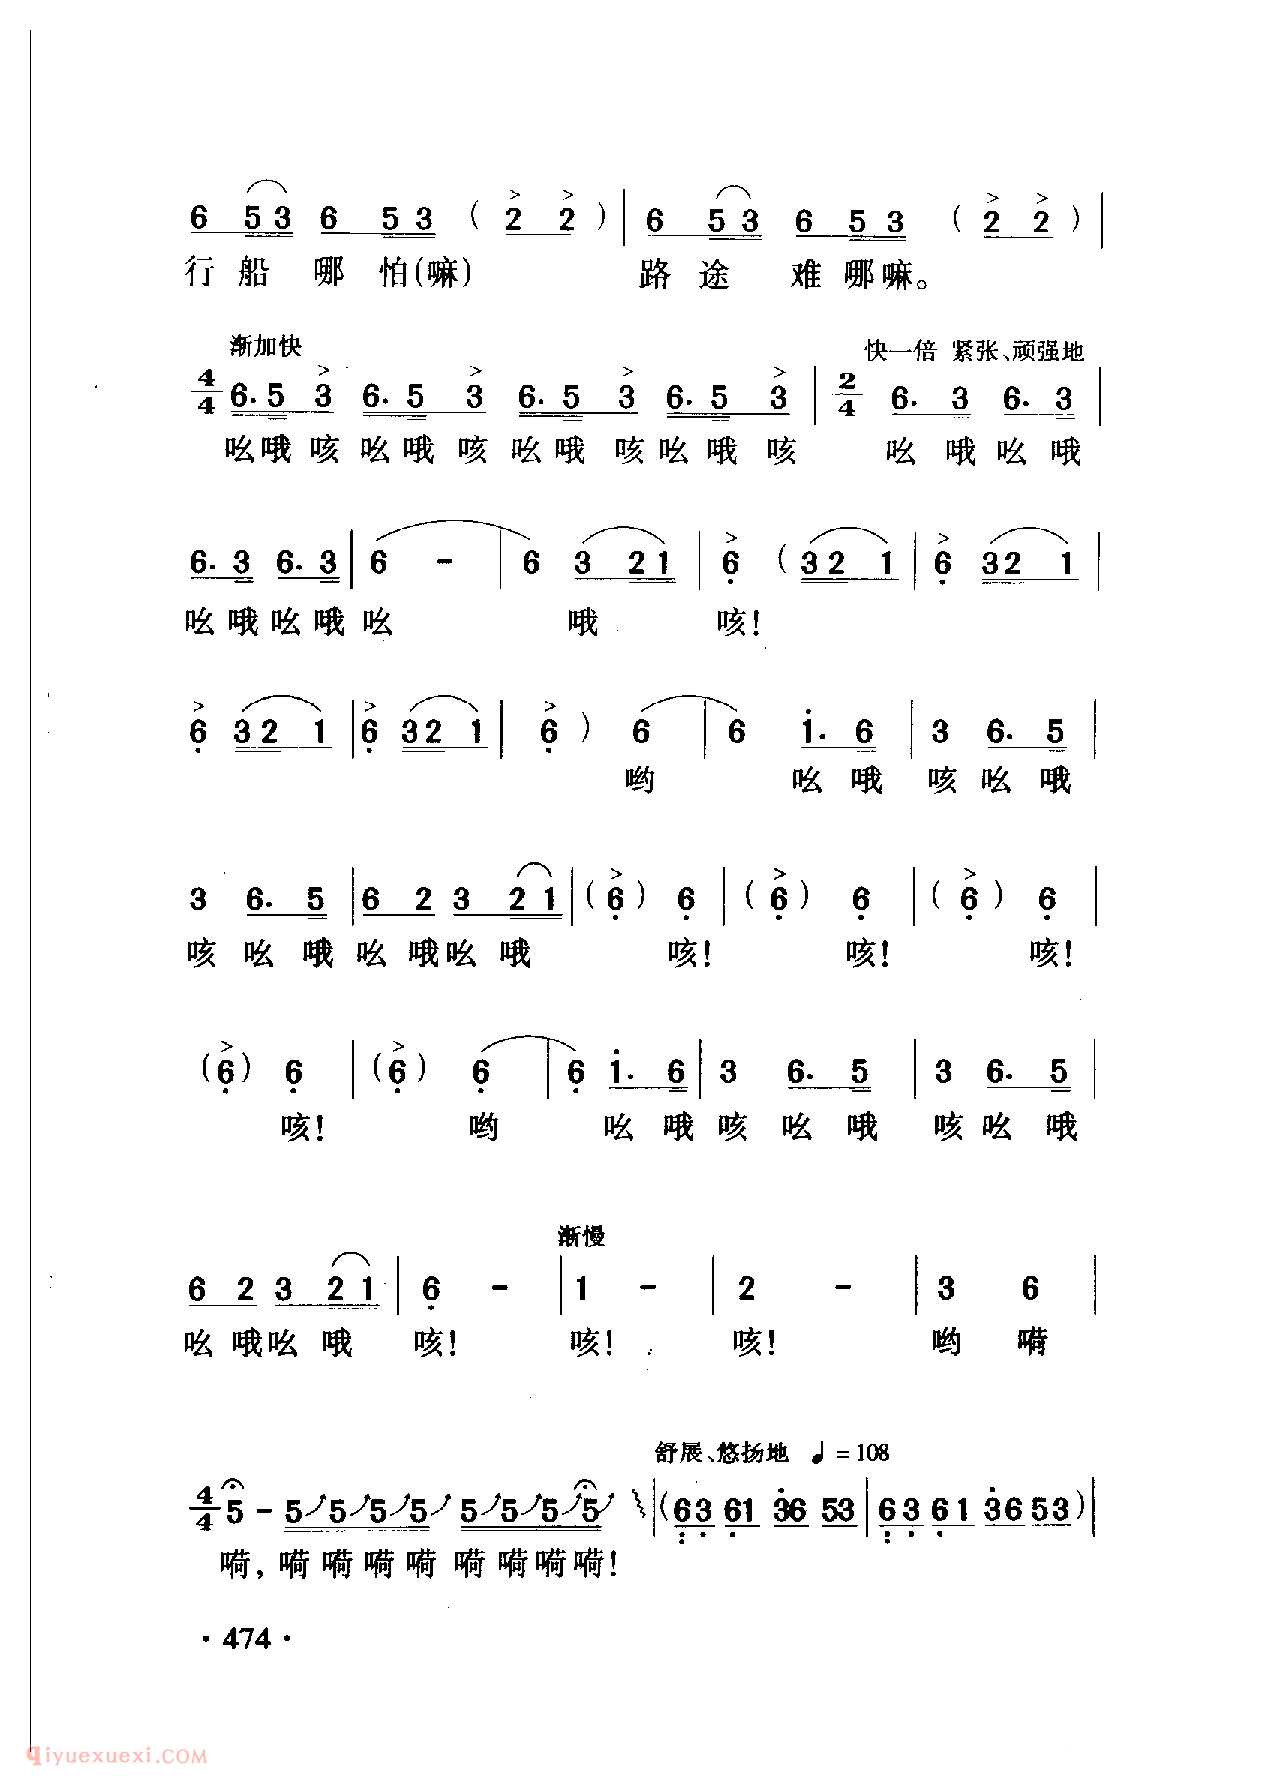 中国名歌[船工号子 影片(漩涡里的歌)插曲]乐谱